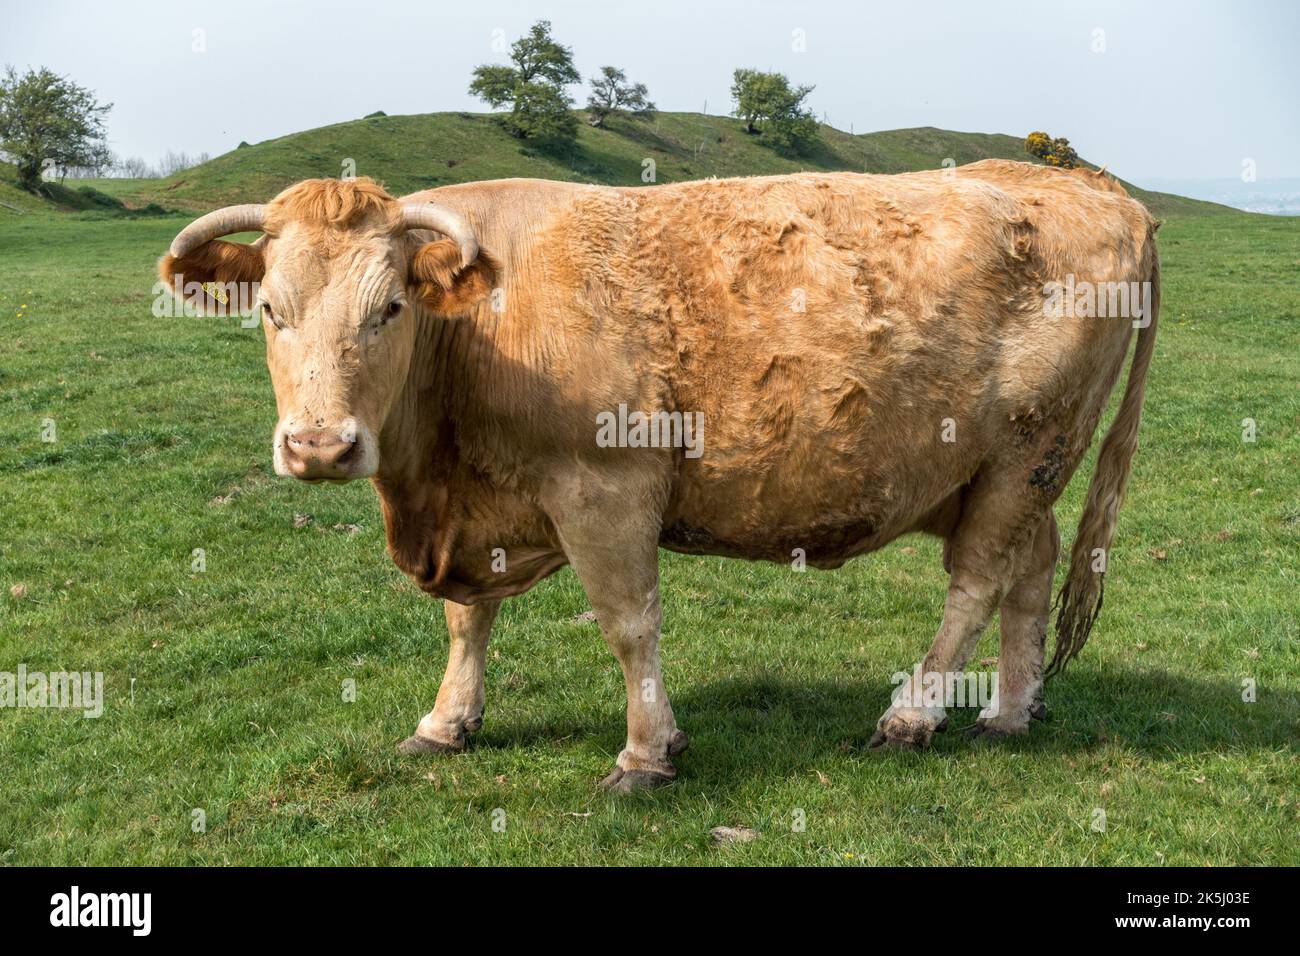 Grande toro adulto marrone chiaro (possibilmente South Devon) con corna in piedi in erba campo, Leicestershire, Inghilterra, Regno Unito Foto Stock